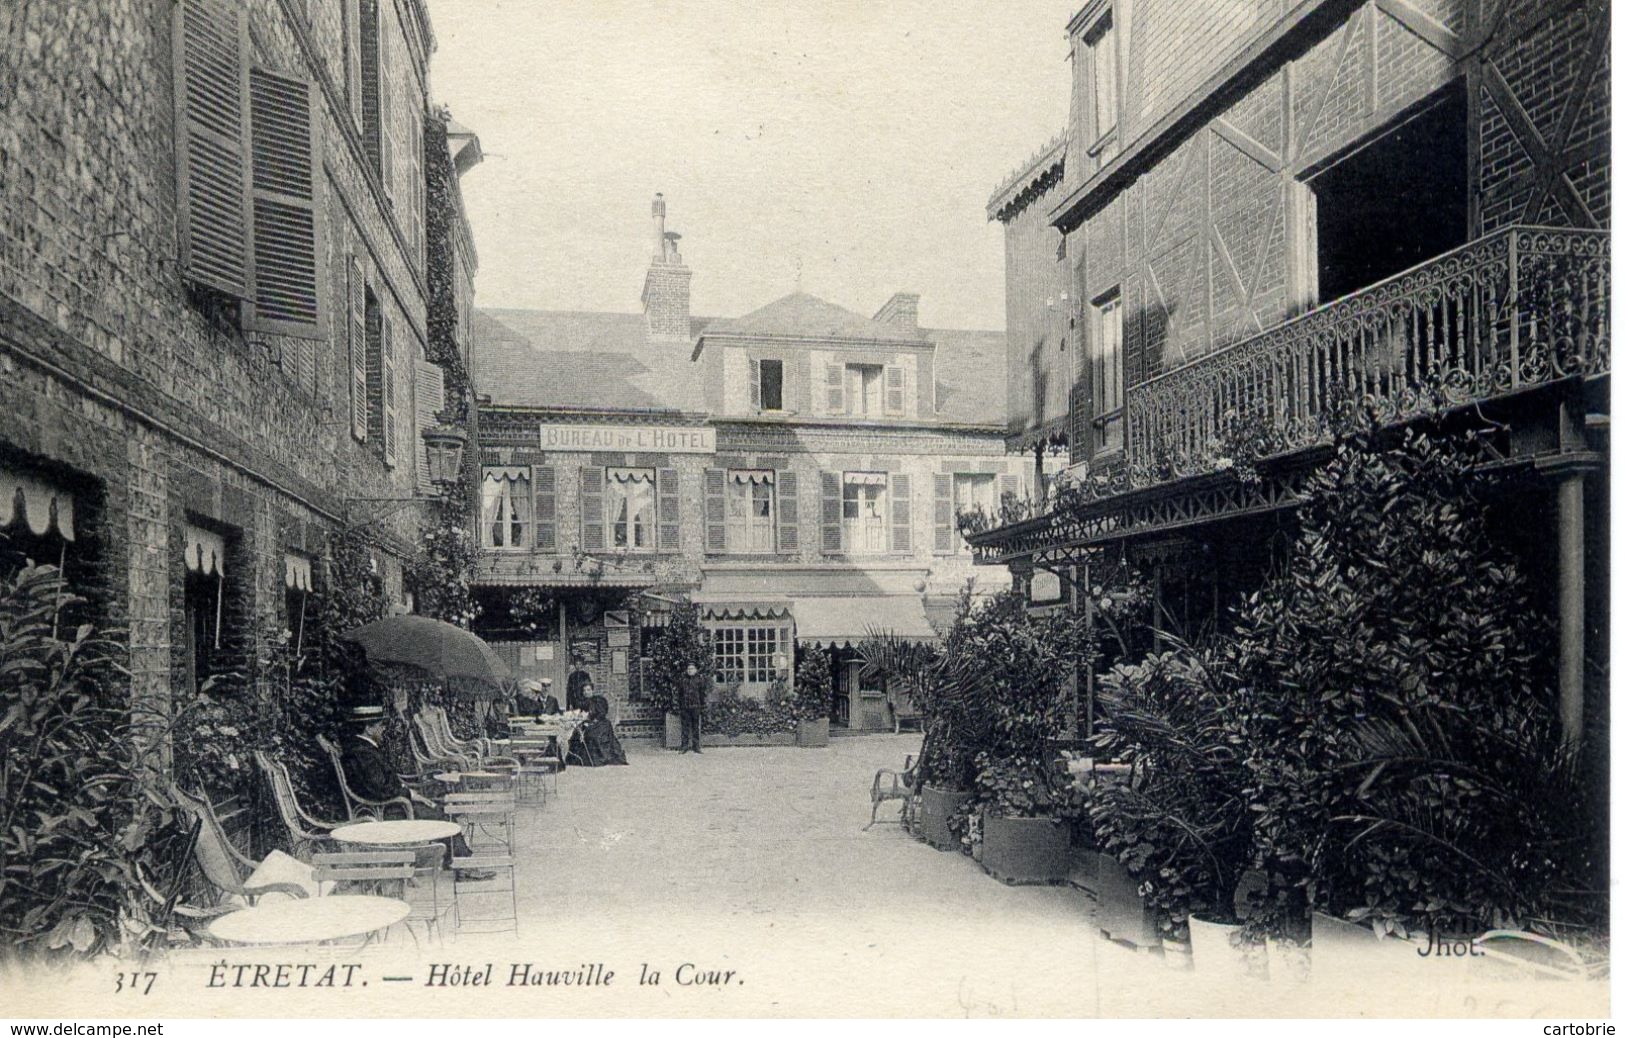 76 ETRETAT - Hôtel Hauville - La Cour - ND Phot. N° 317 - Animée - Etretat